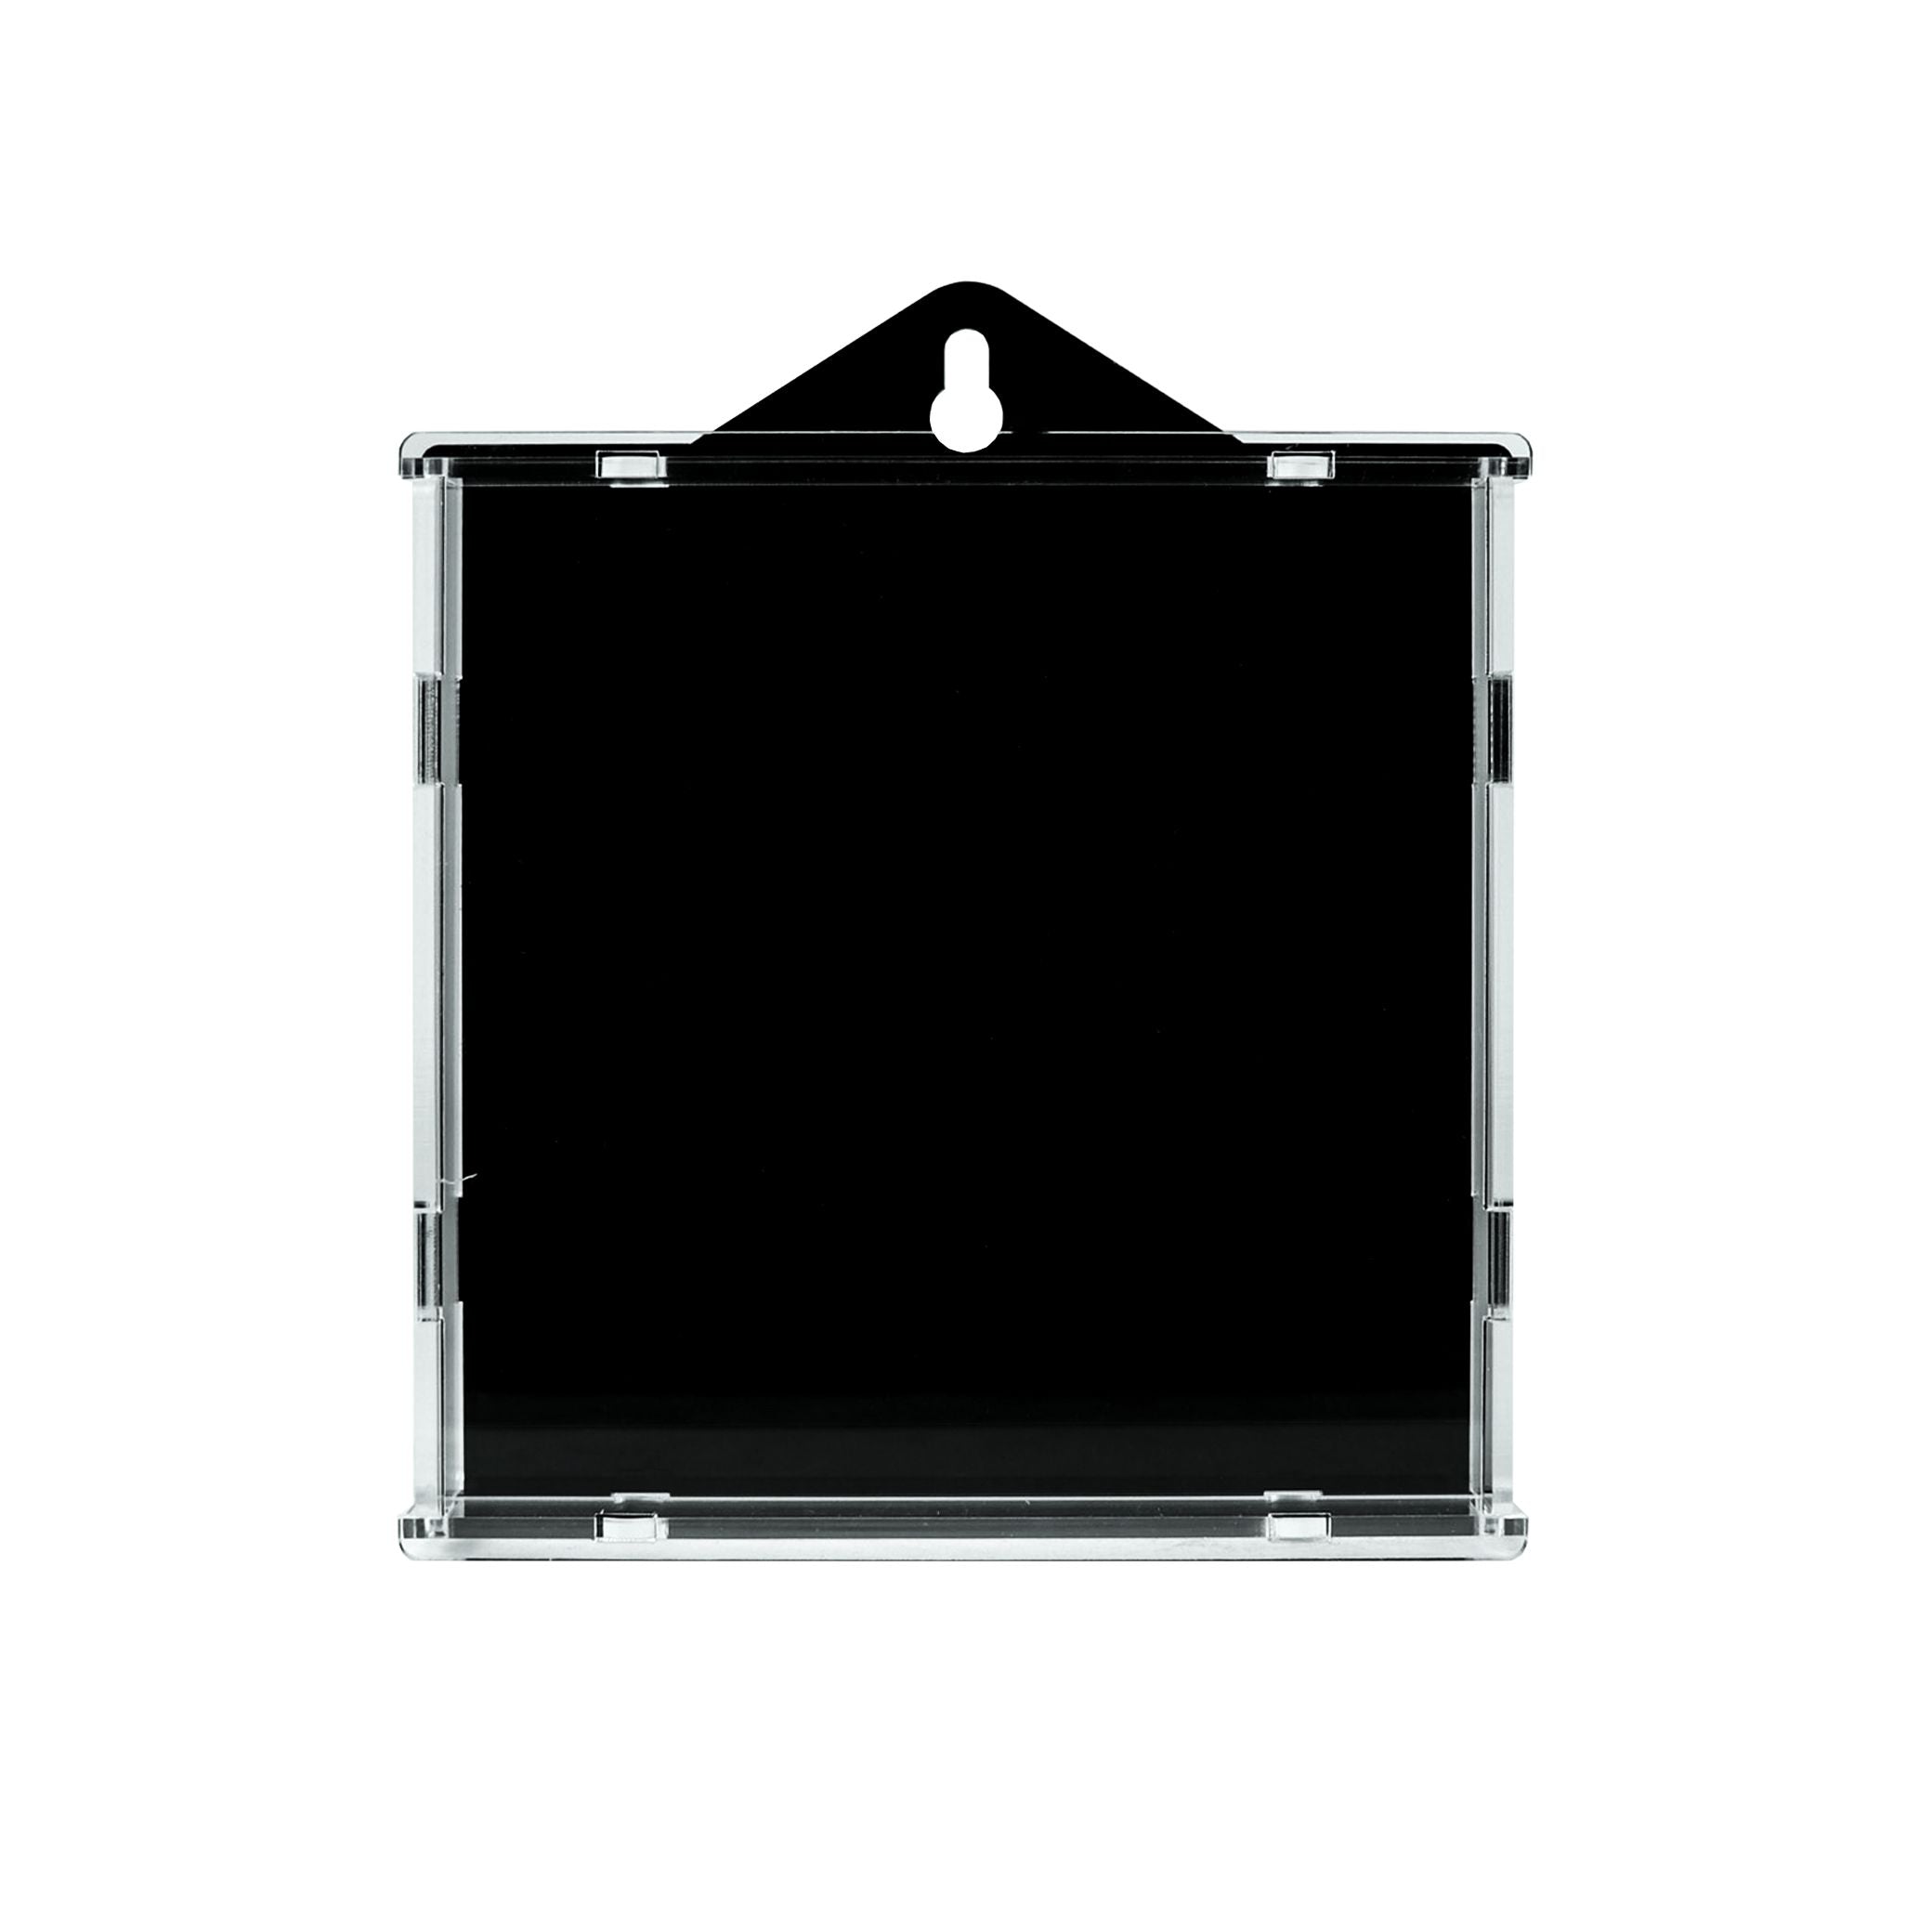 Protector para Polybag MiniFigura™-acrilico-exhibidor-caja-case-Decolecto